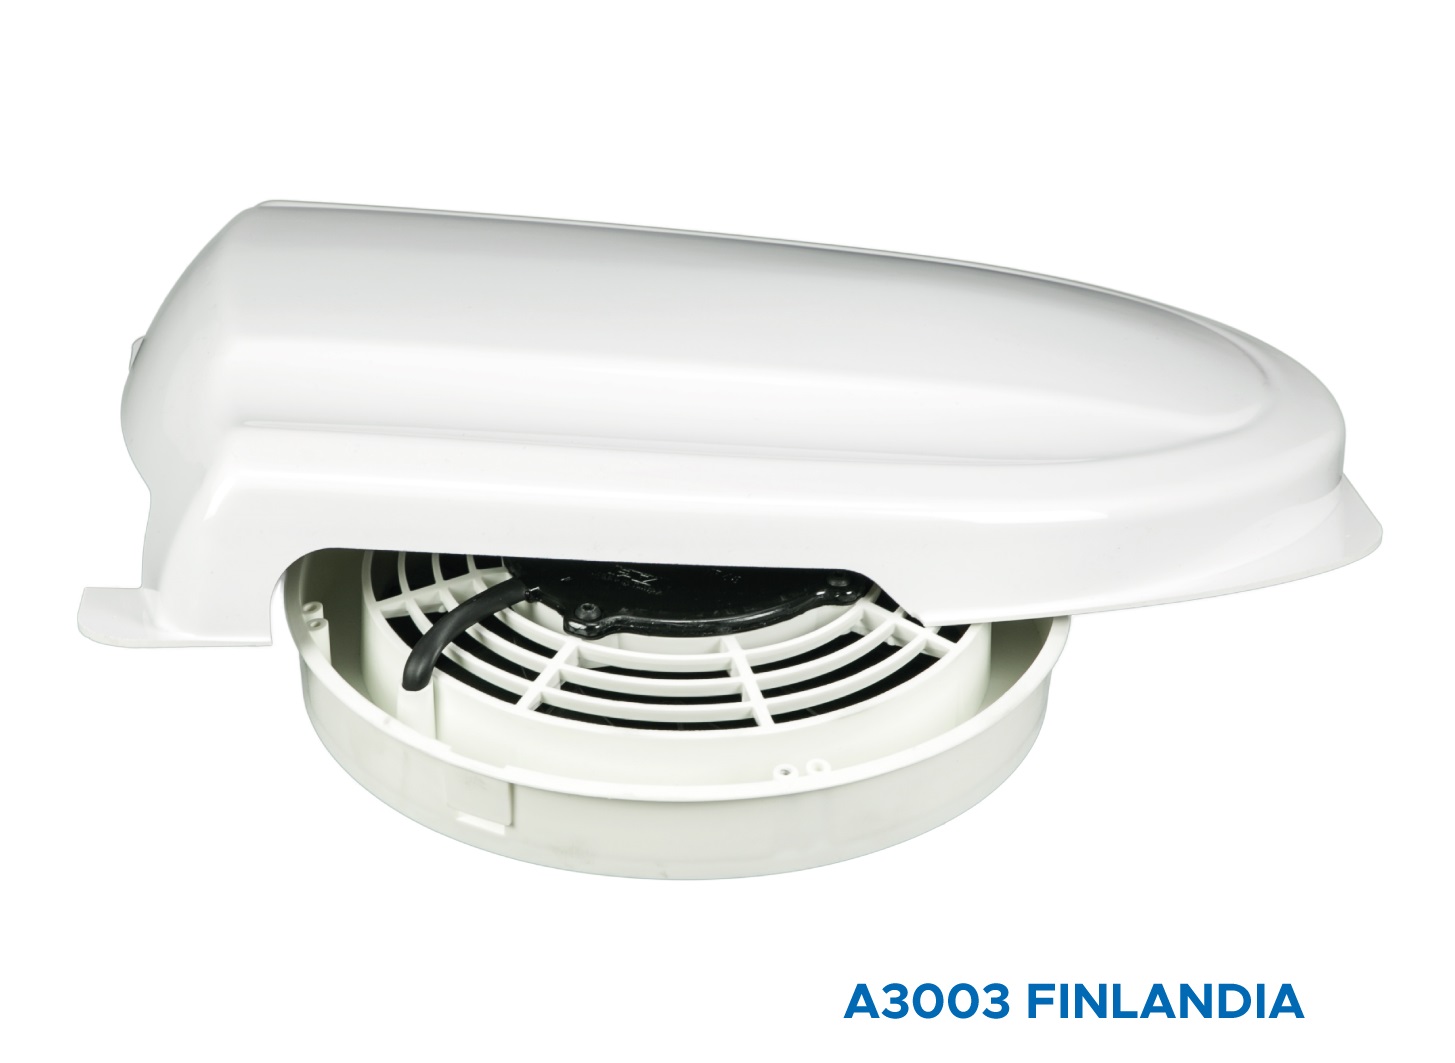 Ventilateur de toit DHS 355 E4 sileo 230V/1~, Débit varaible.